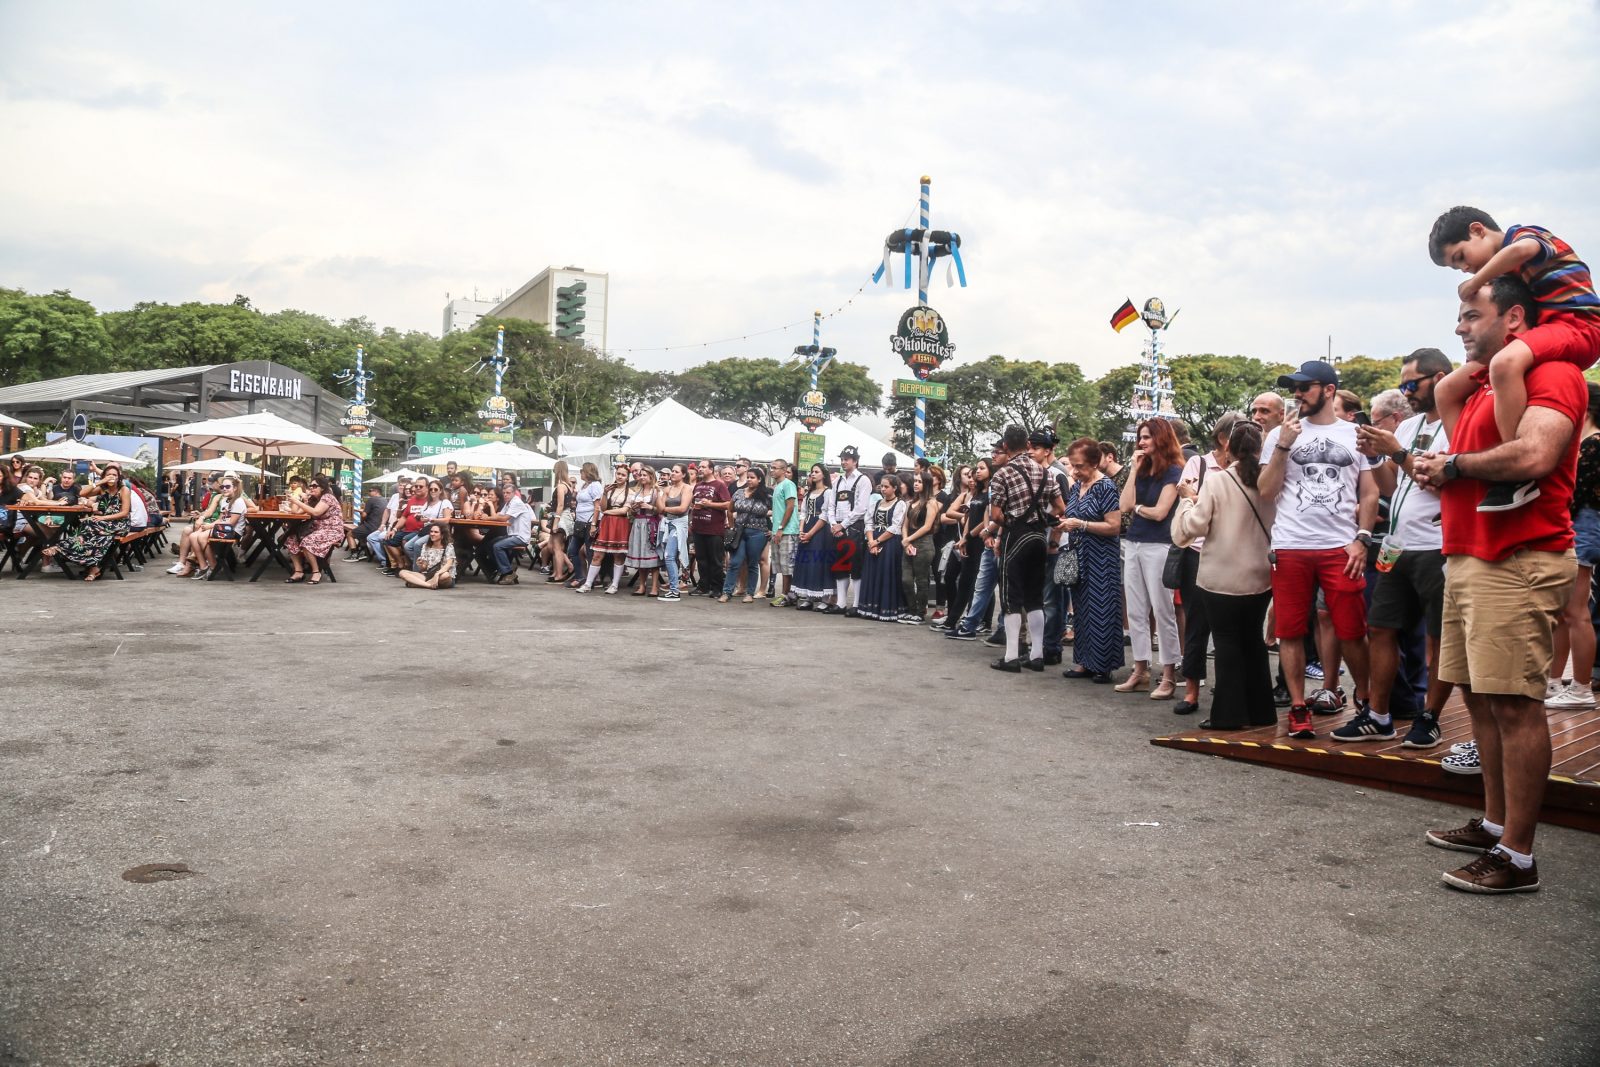 Oktoberfest has kicked off in Brazil